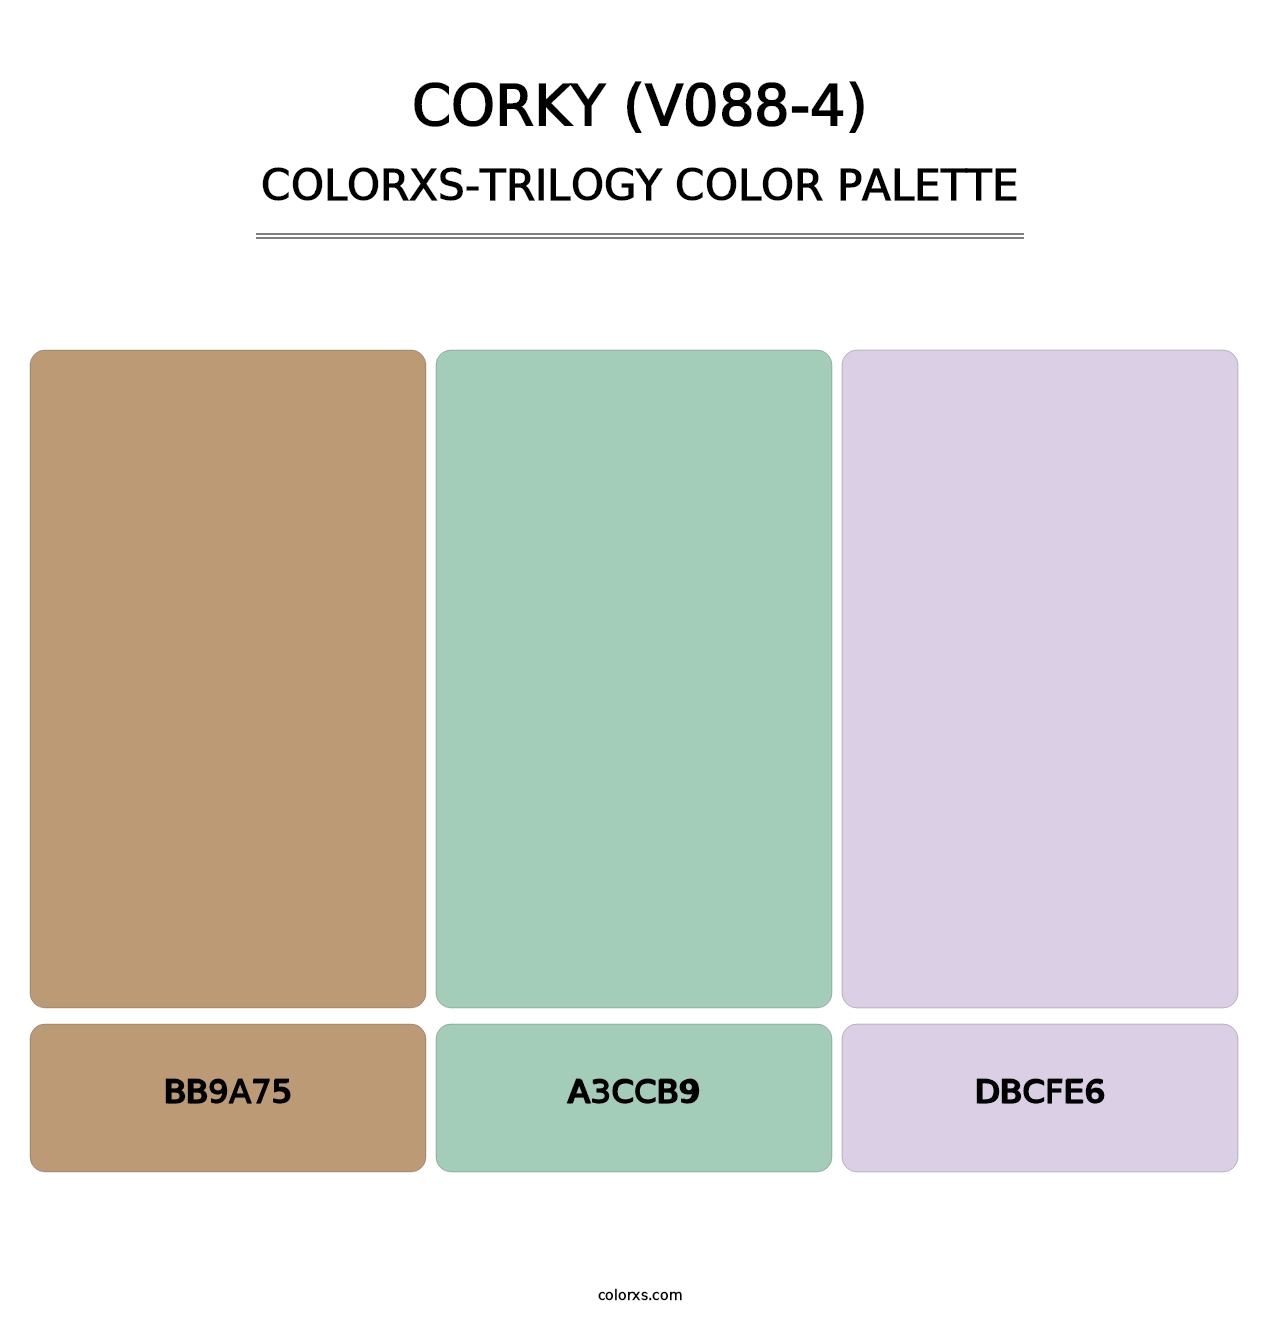 Corky (V088-4) - Colorxs Trilogy Palette